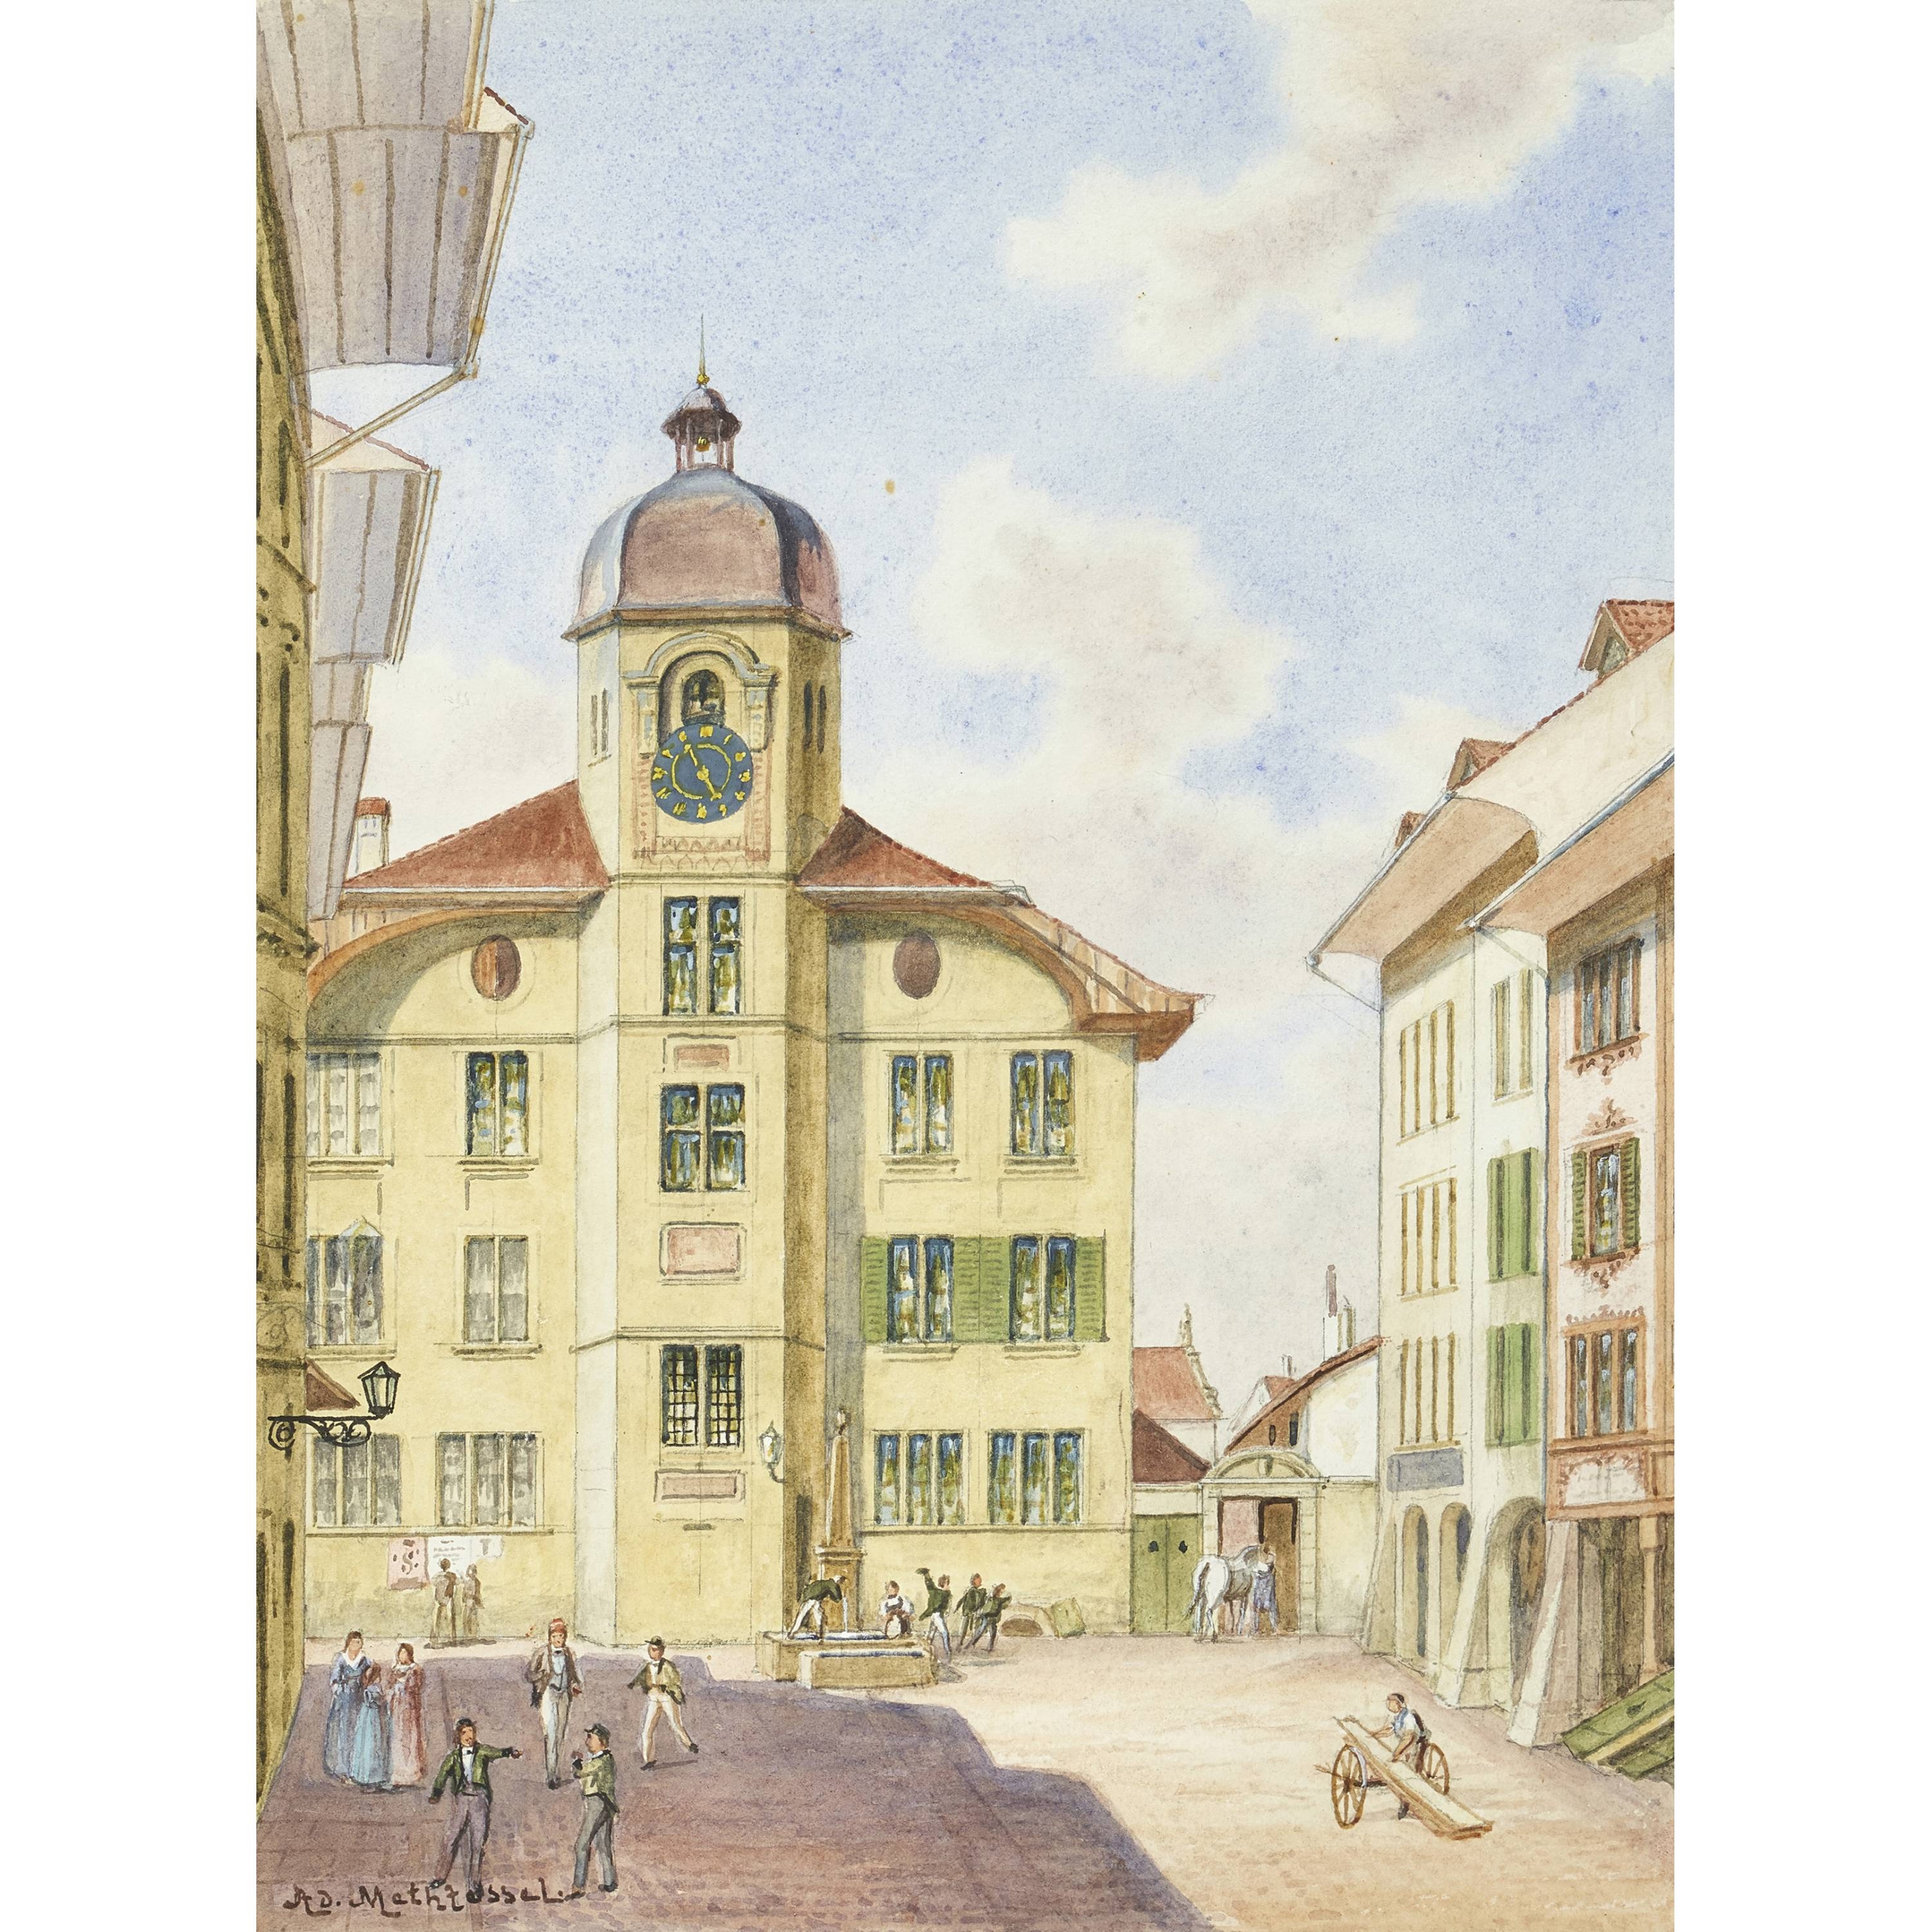 Die Lateinschule in Bern by Adolfo Methfessel